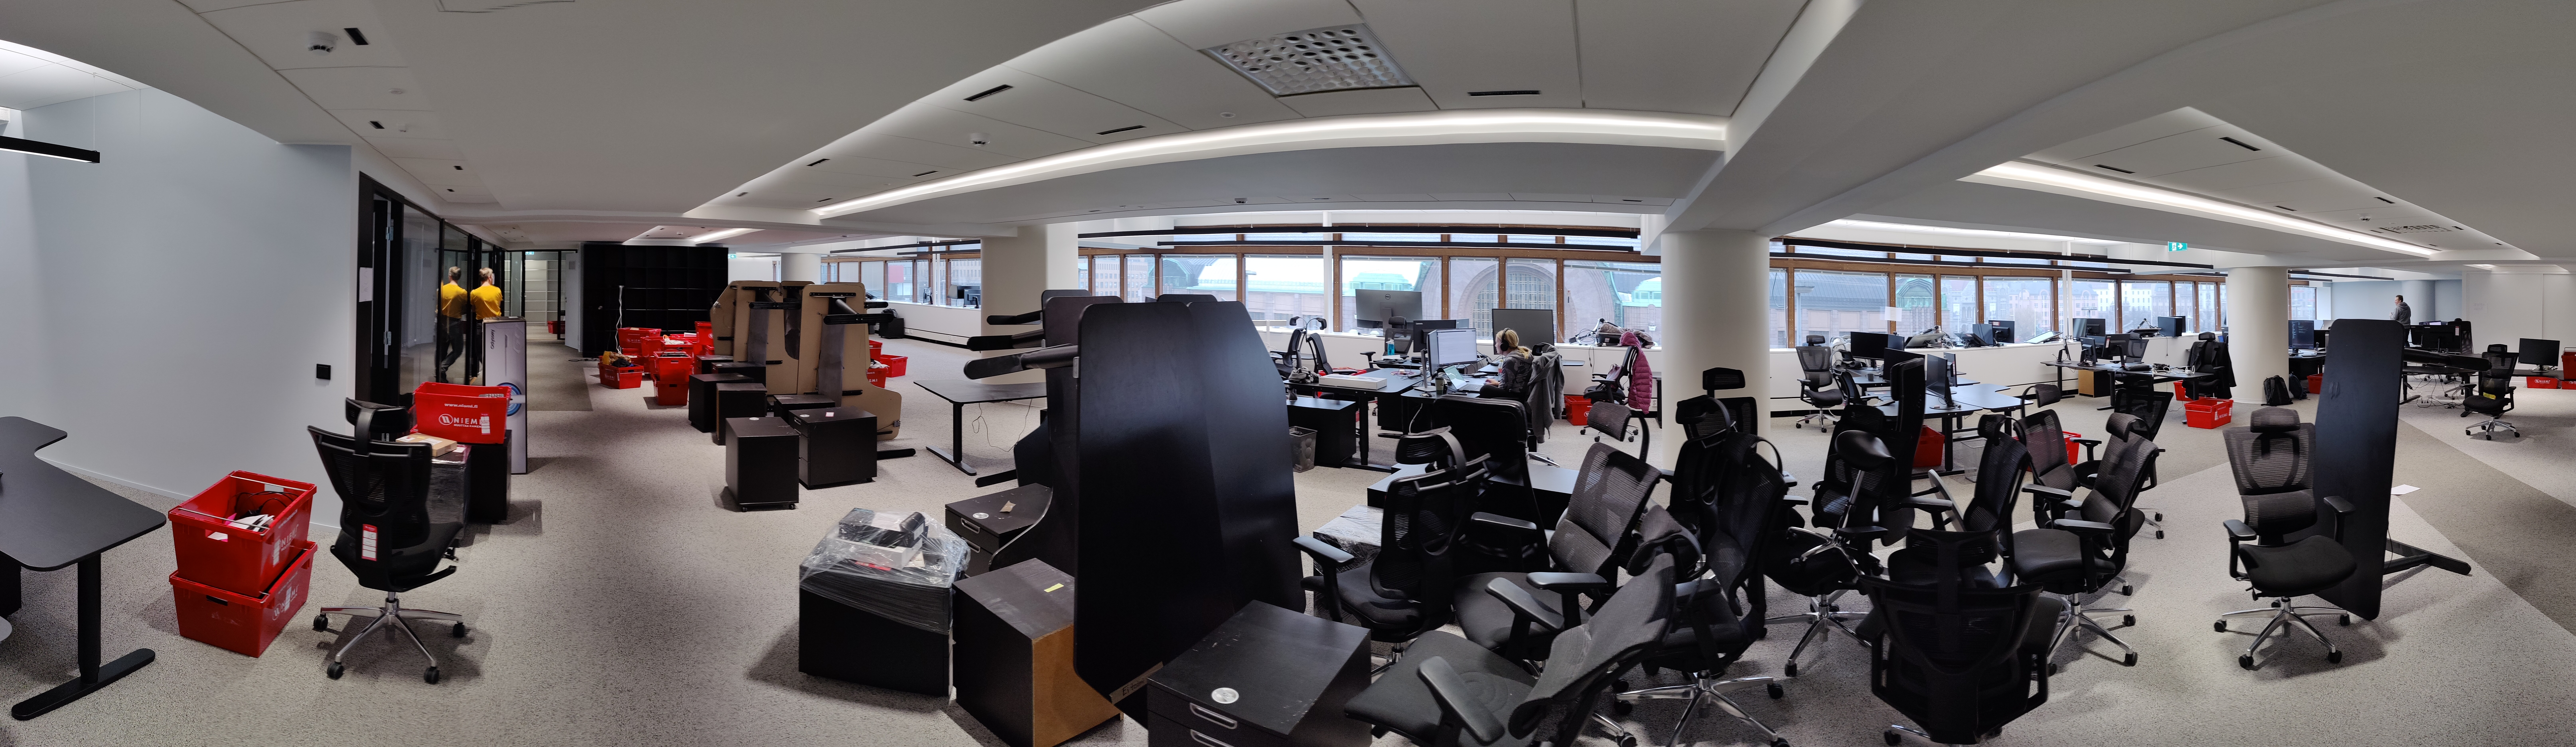 Zure new office panorama